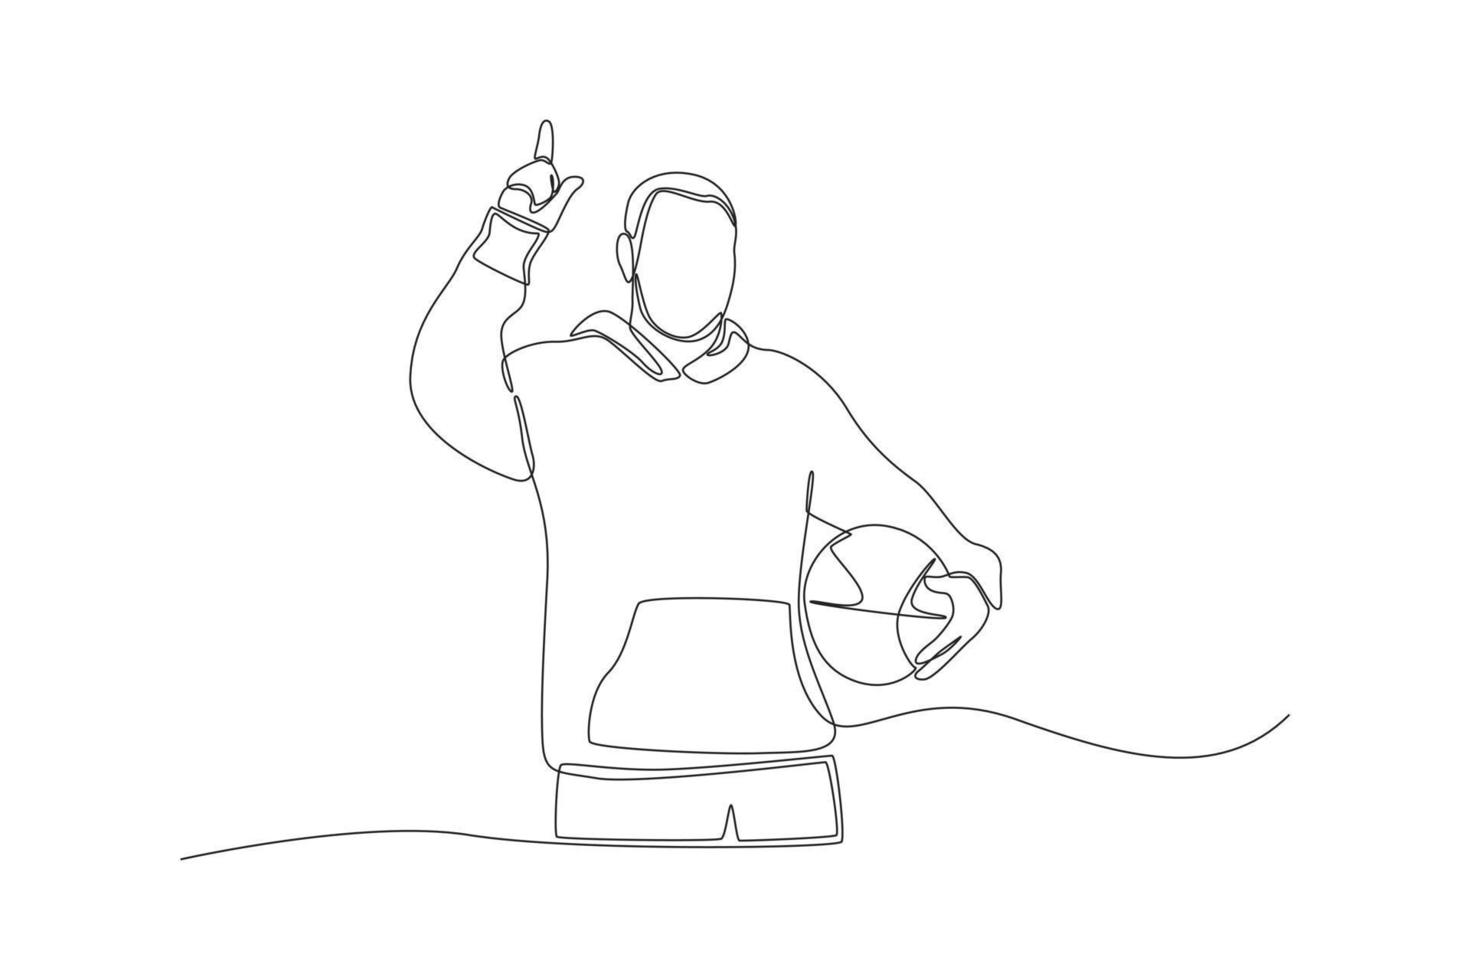 single een lijn tekening sportman met zijn mand bal richten omhoog. richten concept. doorlopend lijn trek ontwerp grafisch vector illustratie.